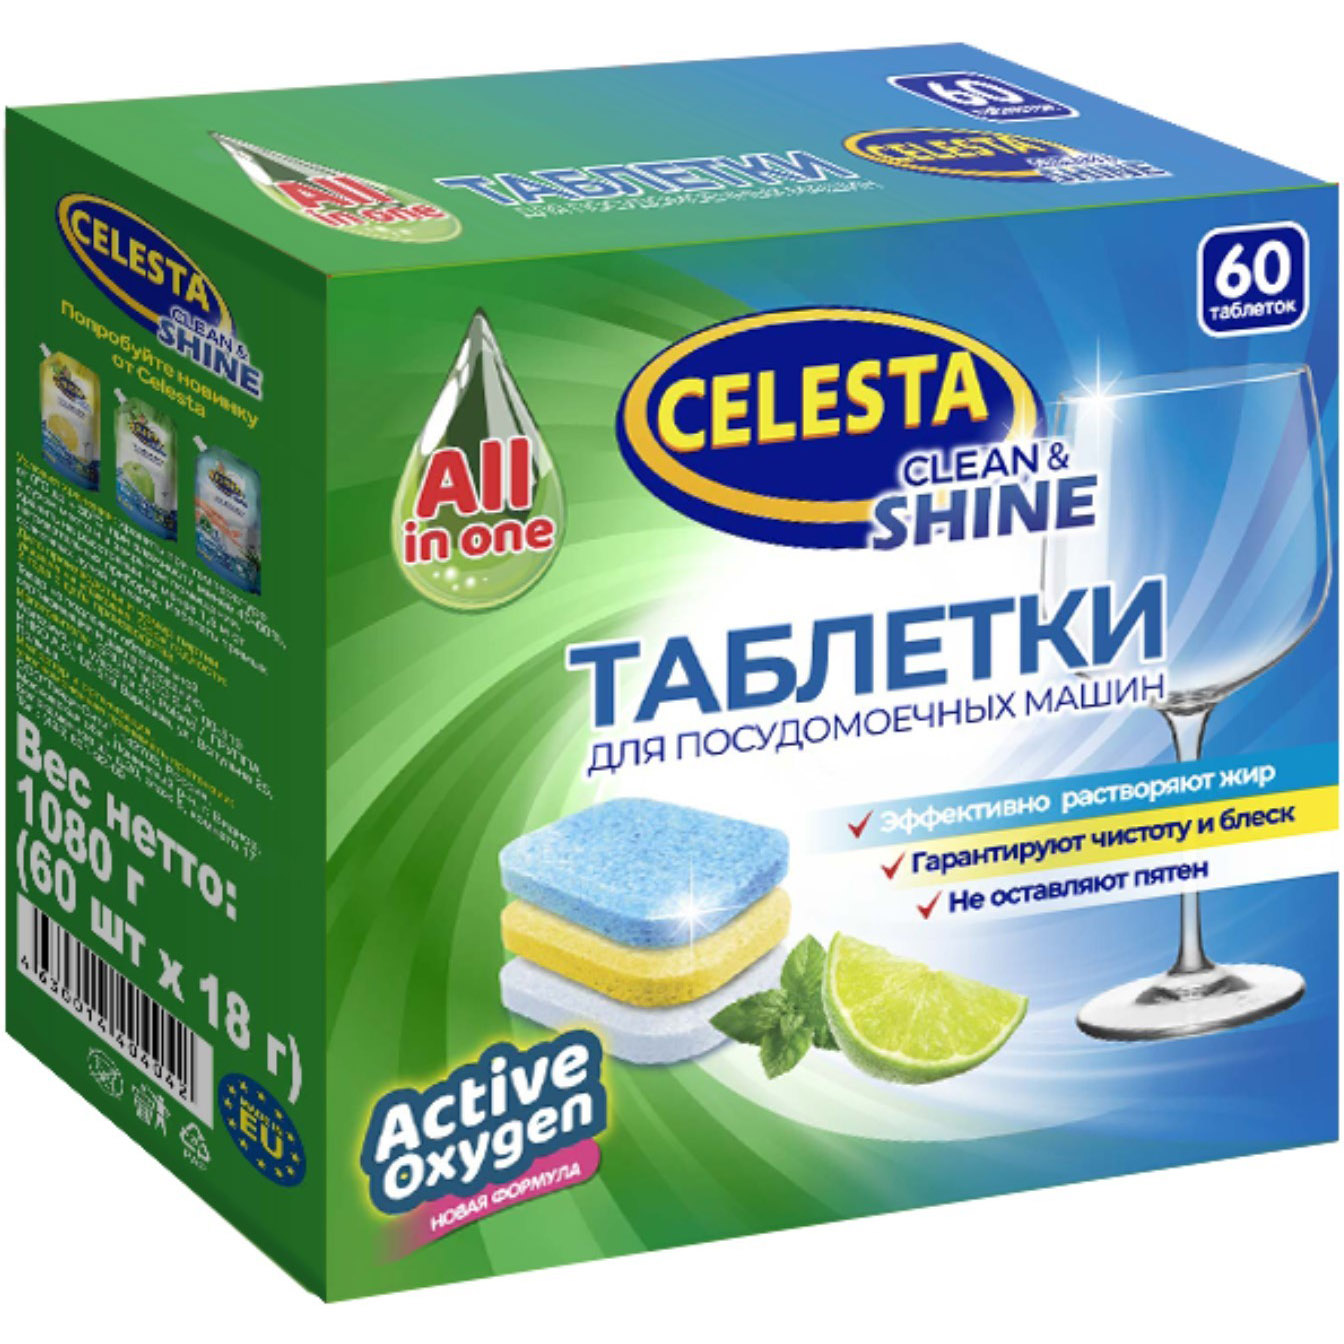 Таблетки для посудомоечных машин Celesta Clean & shine Трехслойные 60 шт таблетки для посудомоечных машин celesta clean